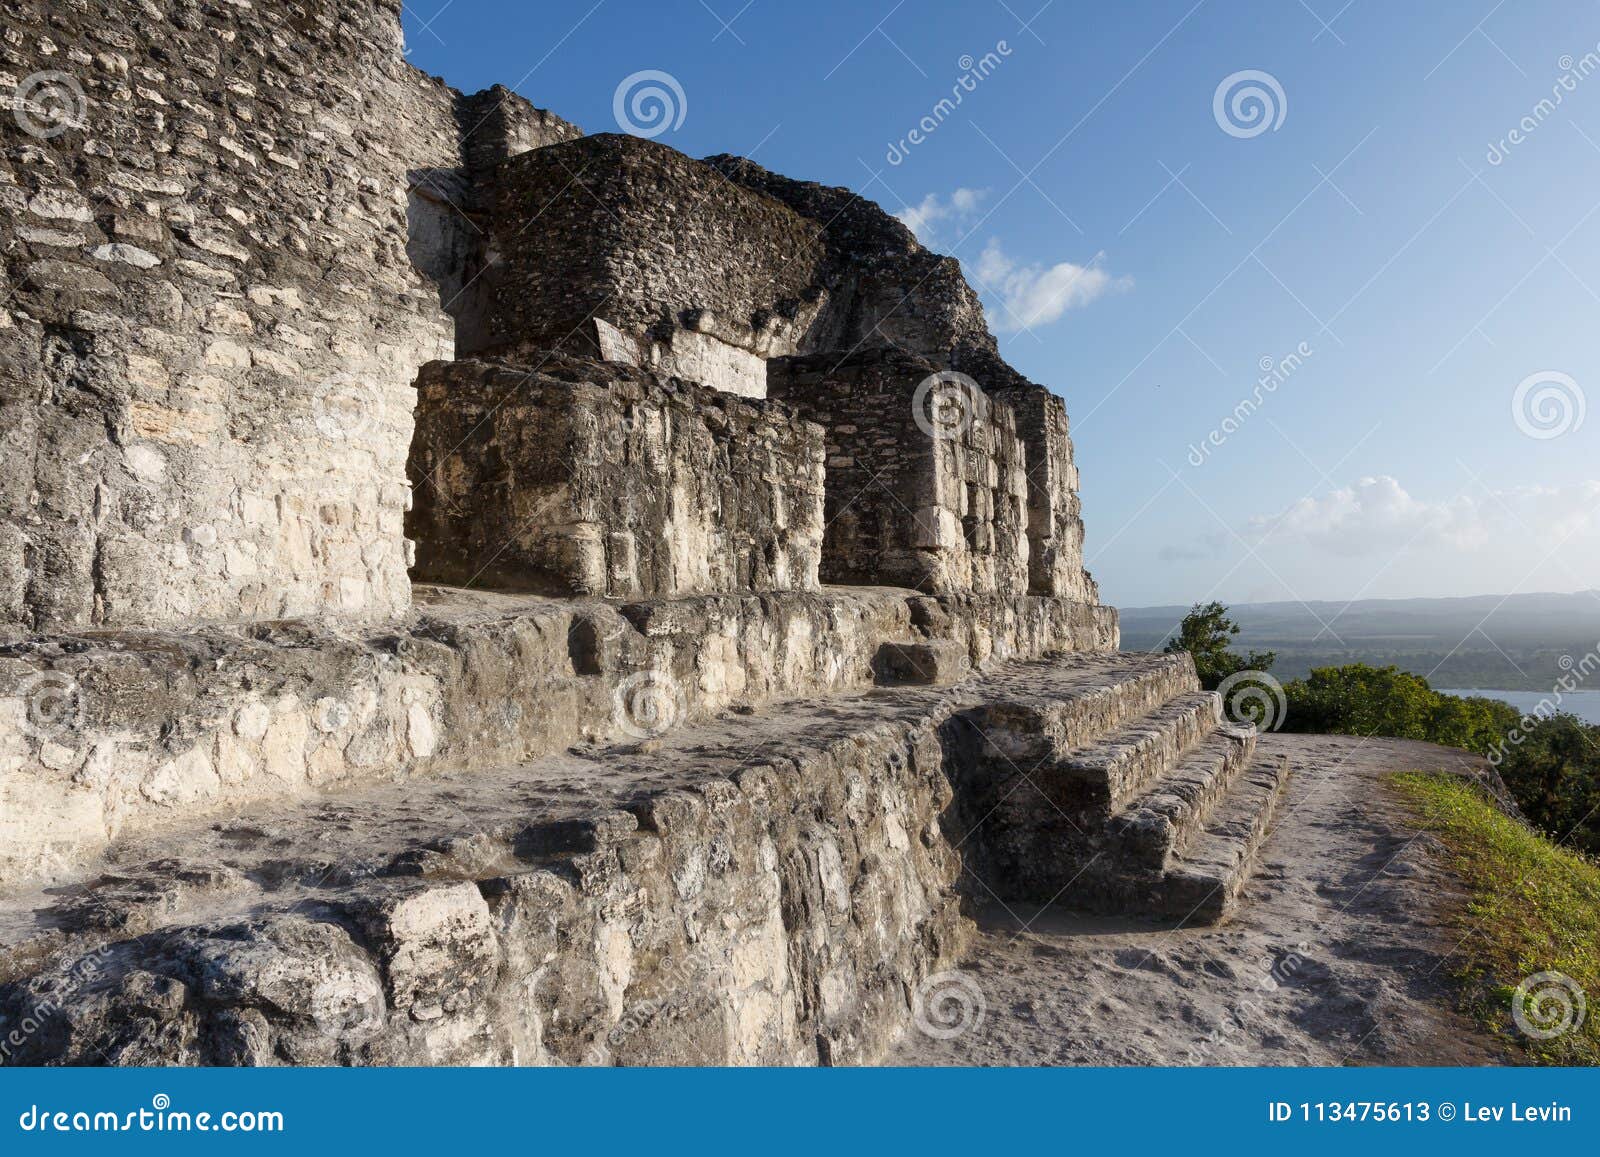 ruins of the ancient mayan city yaxha